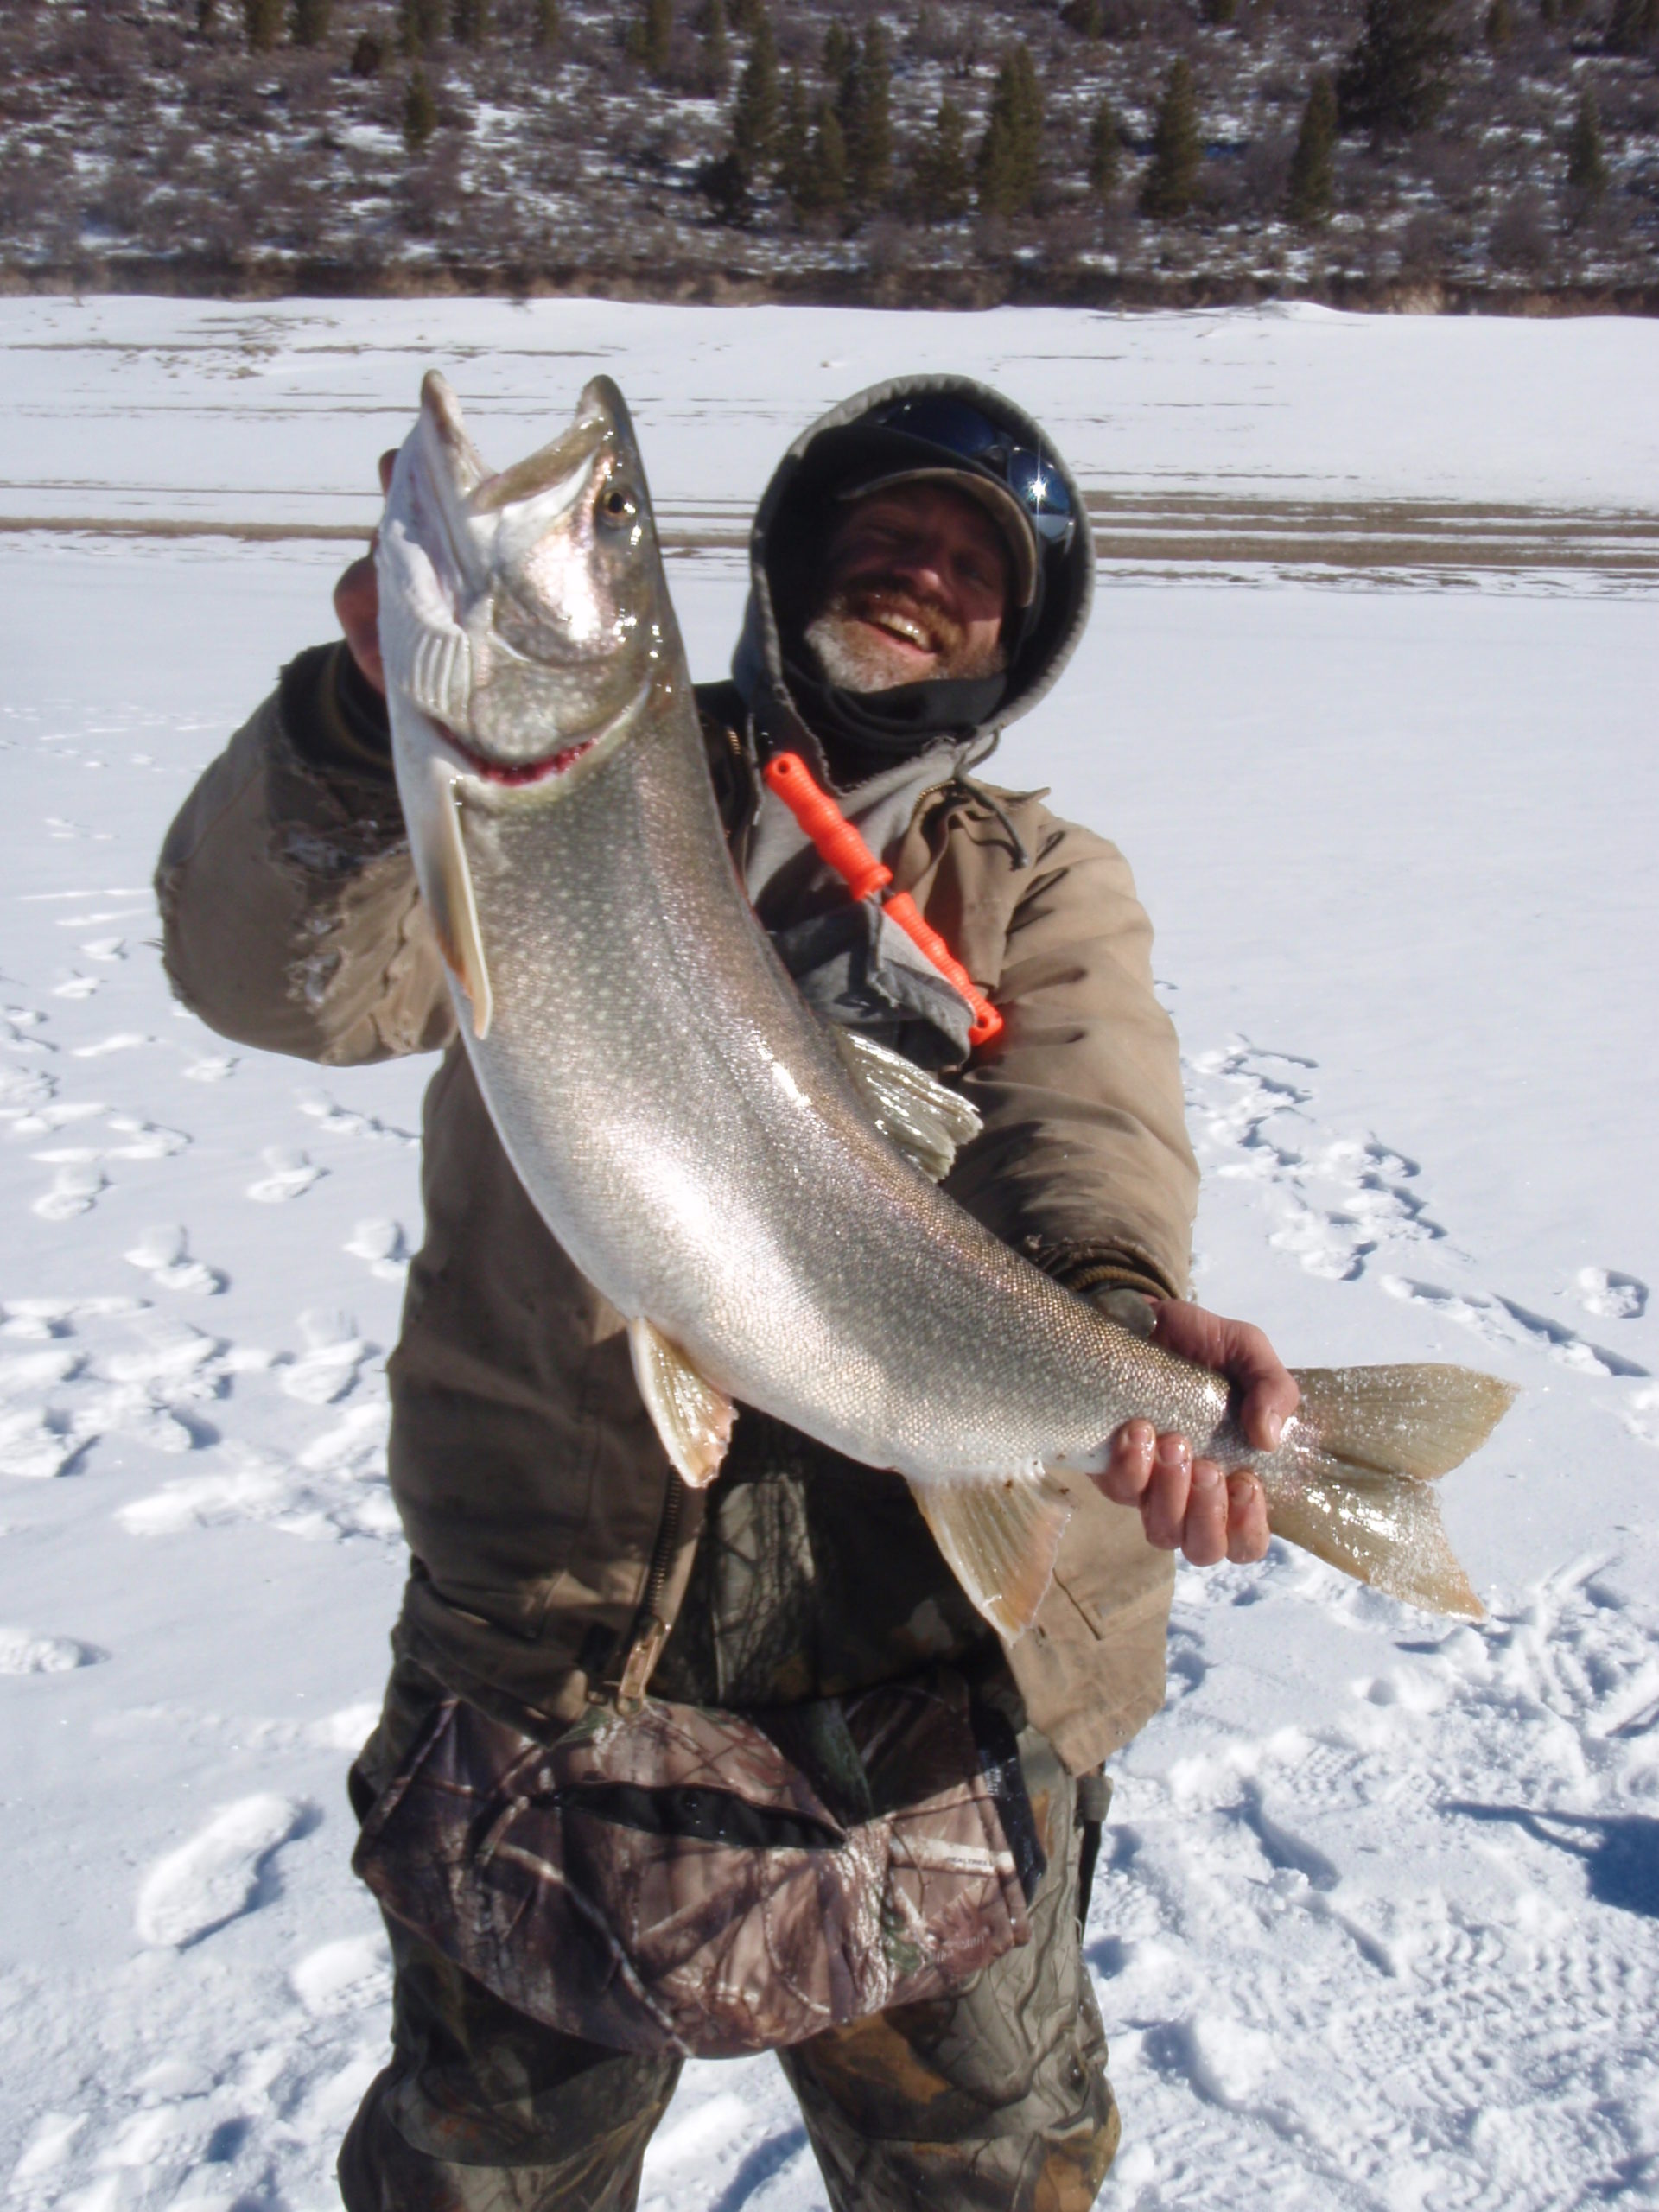 Winter fishing in Colorado